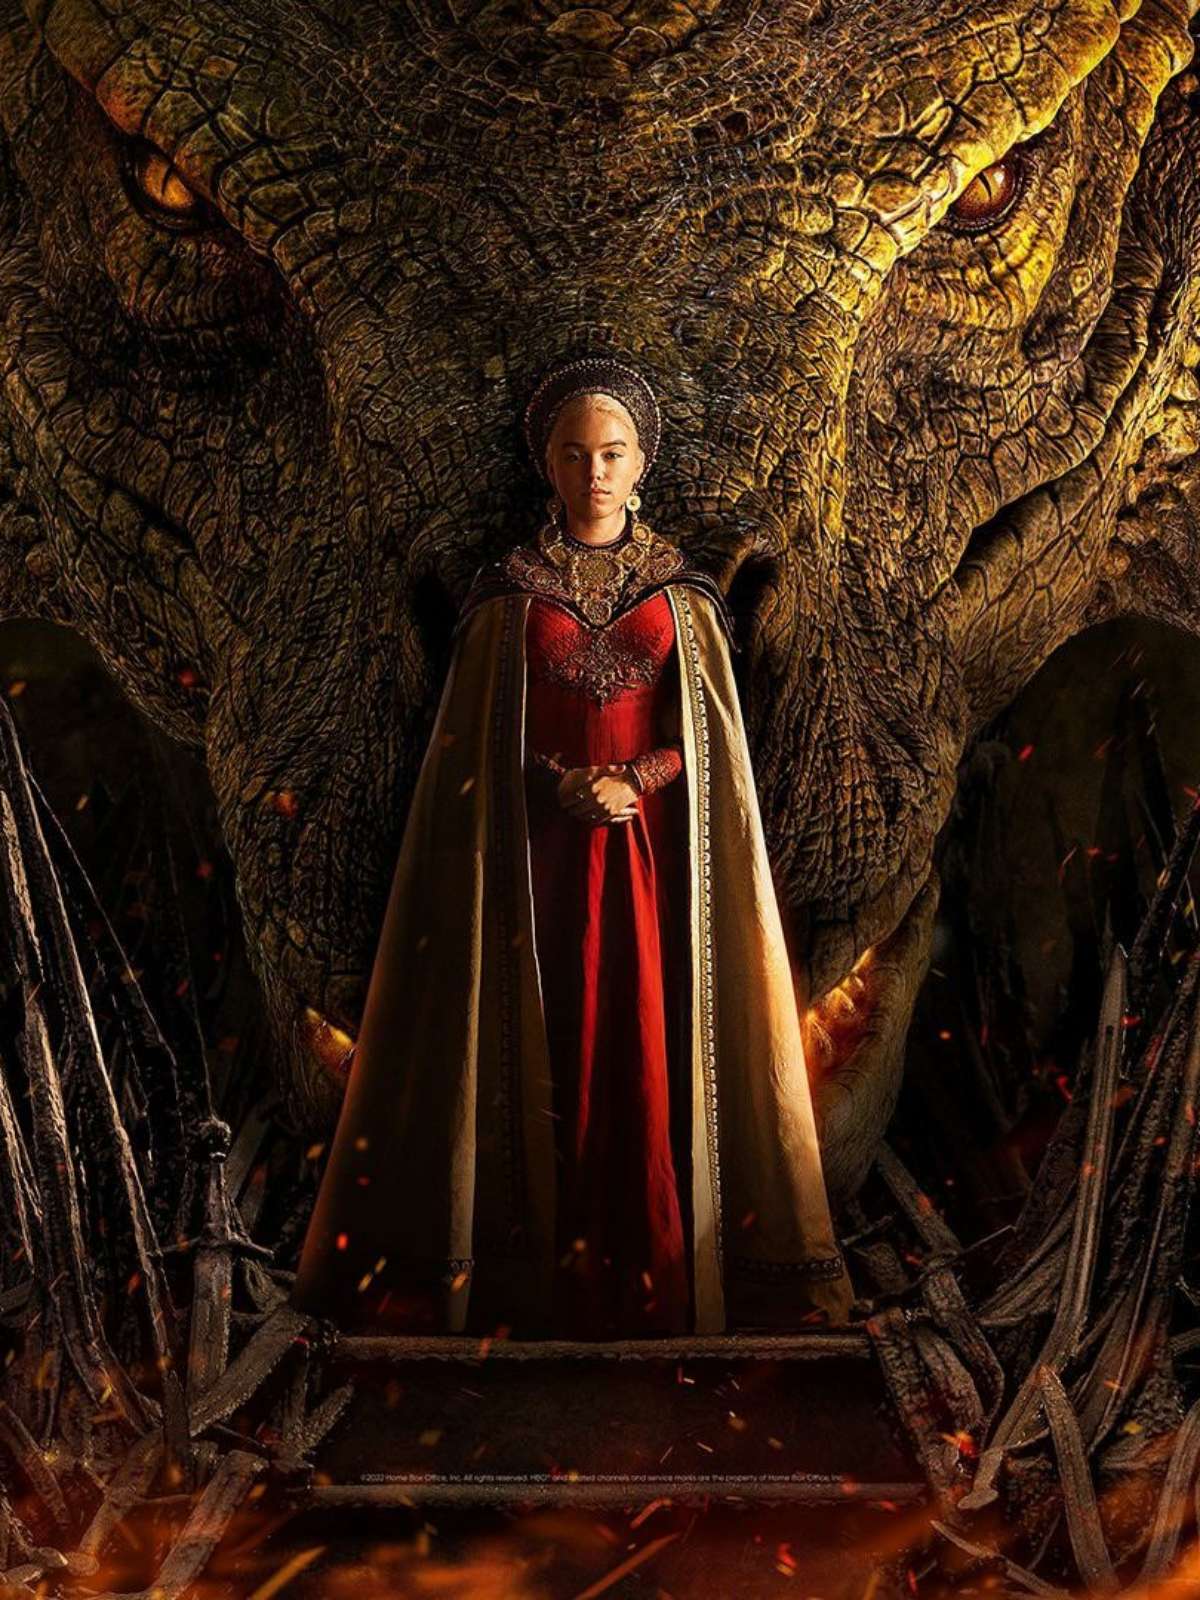 A Casa do Dragão: segunda temporada ganha previsão de estreia